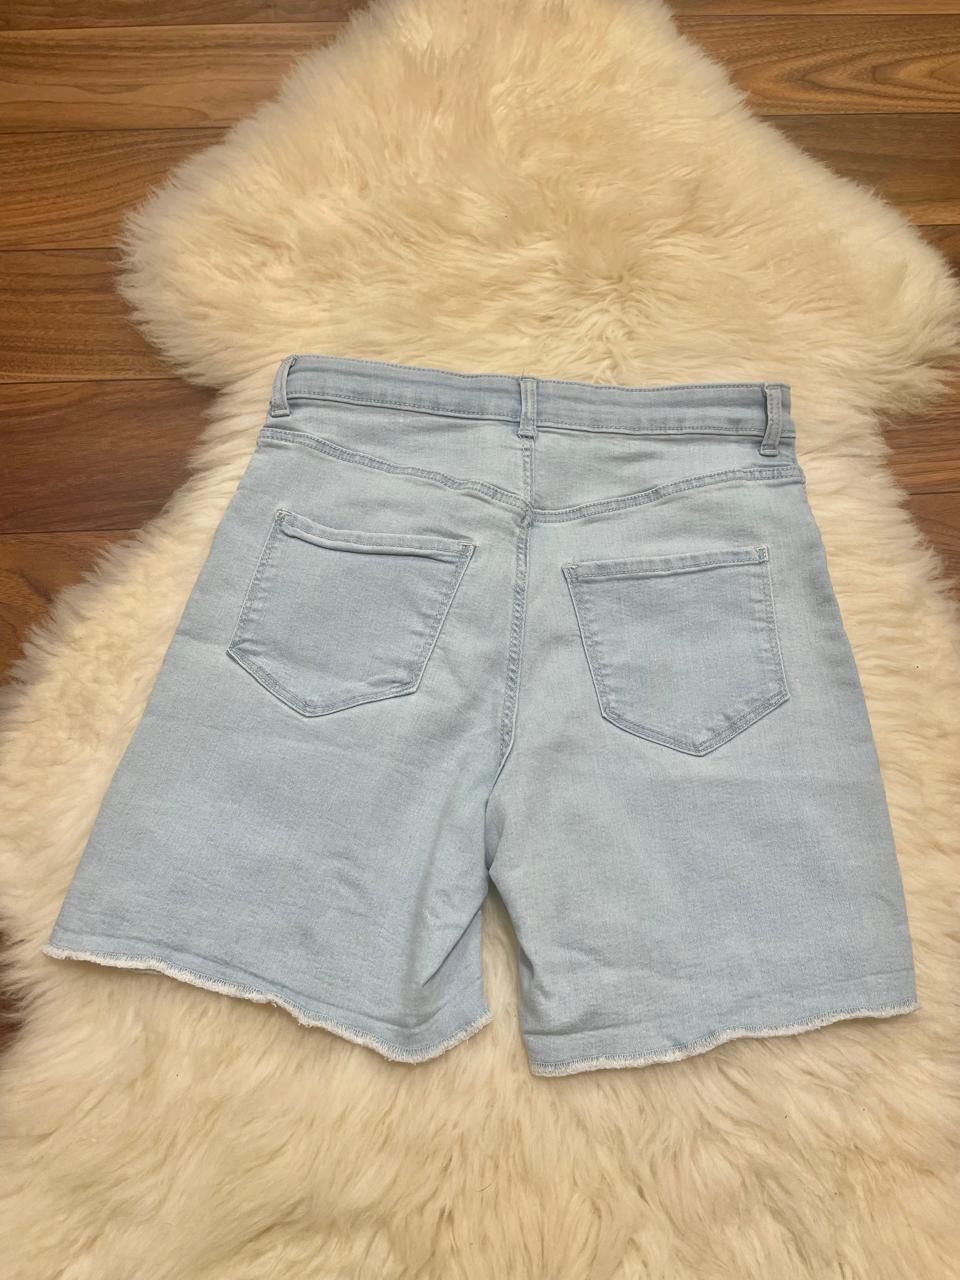 Женские джинсовые шорты размер S (новые)